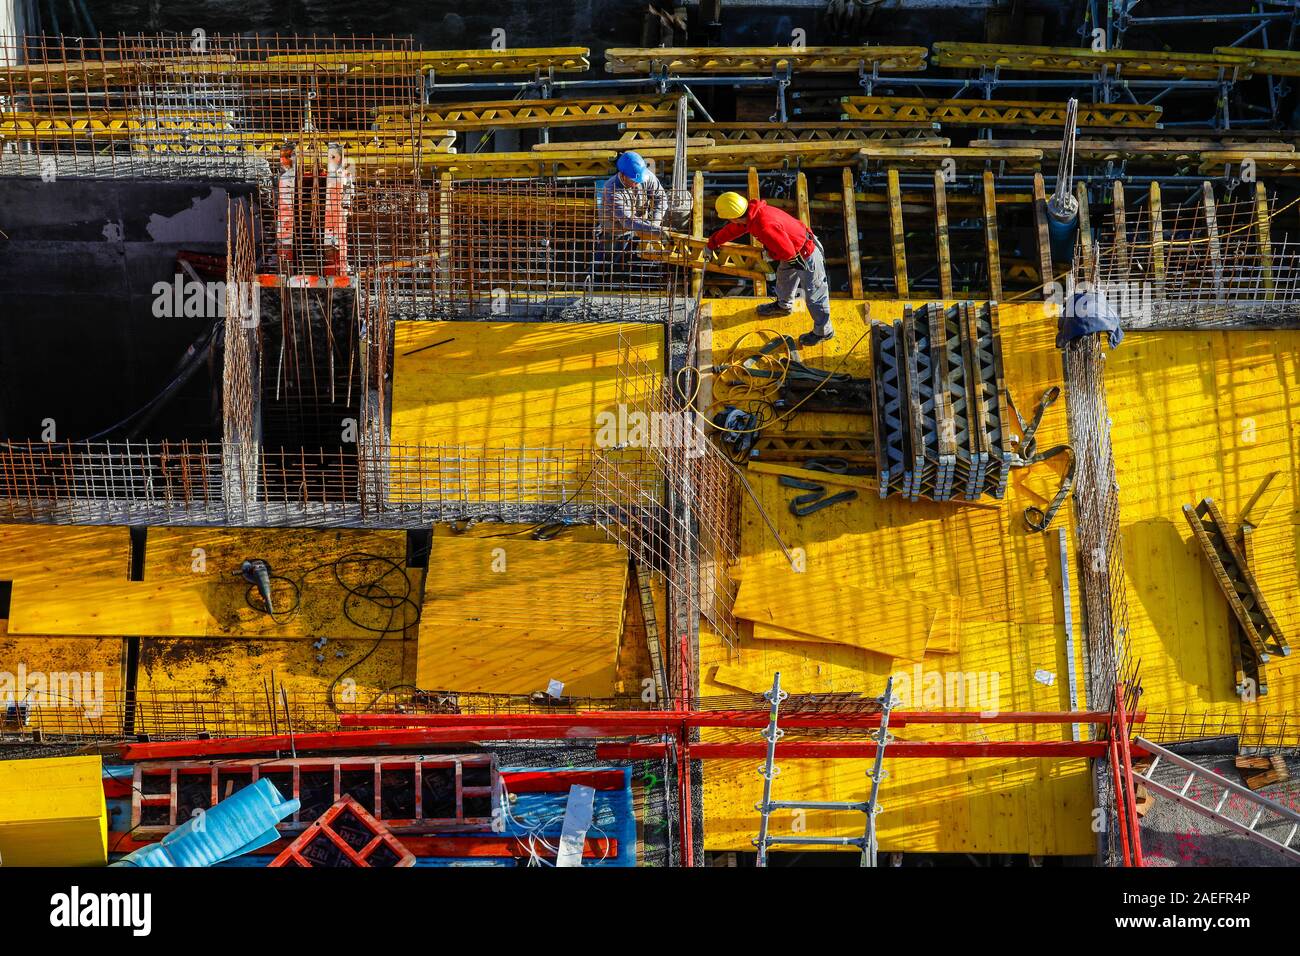 Oberhausen, Ruhrgebiet, Nordrhein-Westfalen, Deutschland - Bauarbeiter arbeiten auf Beton Schalung auf der Baustelle. Oberhausen, Ruh Stockfoto